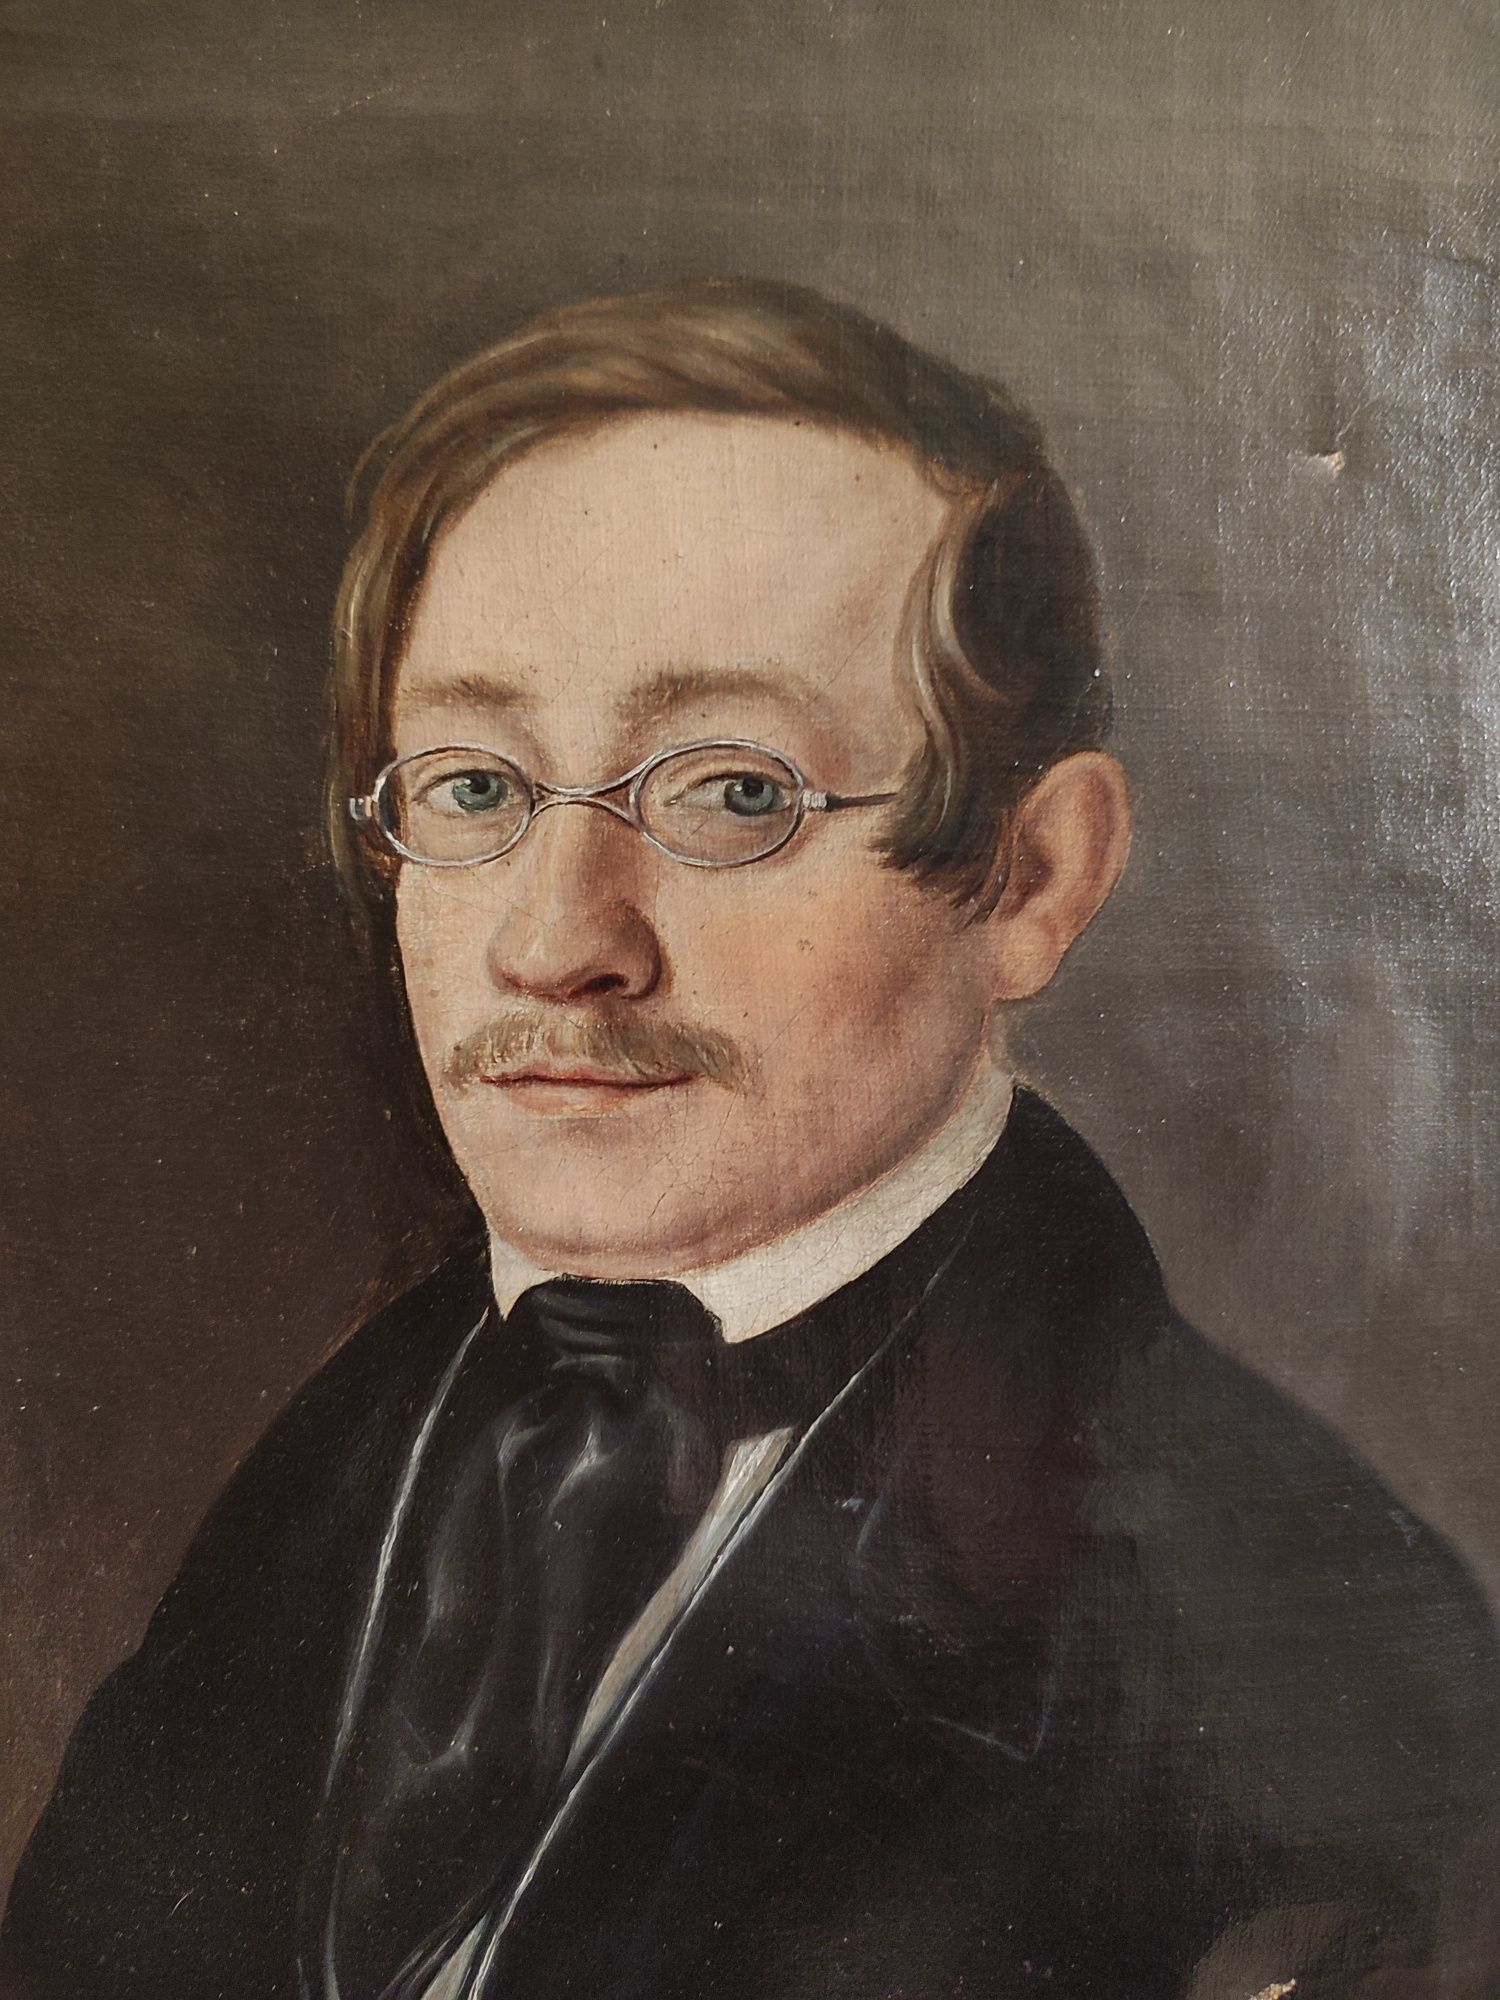 Portret biedermeier 1846 r.